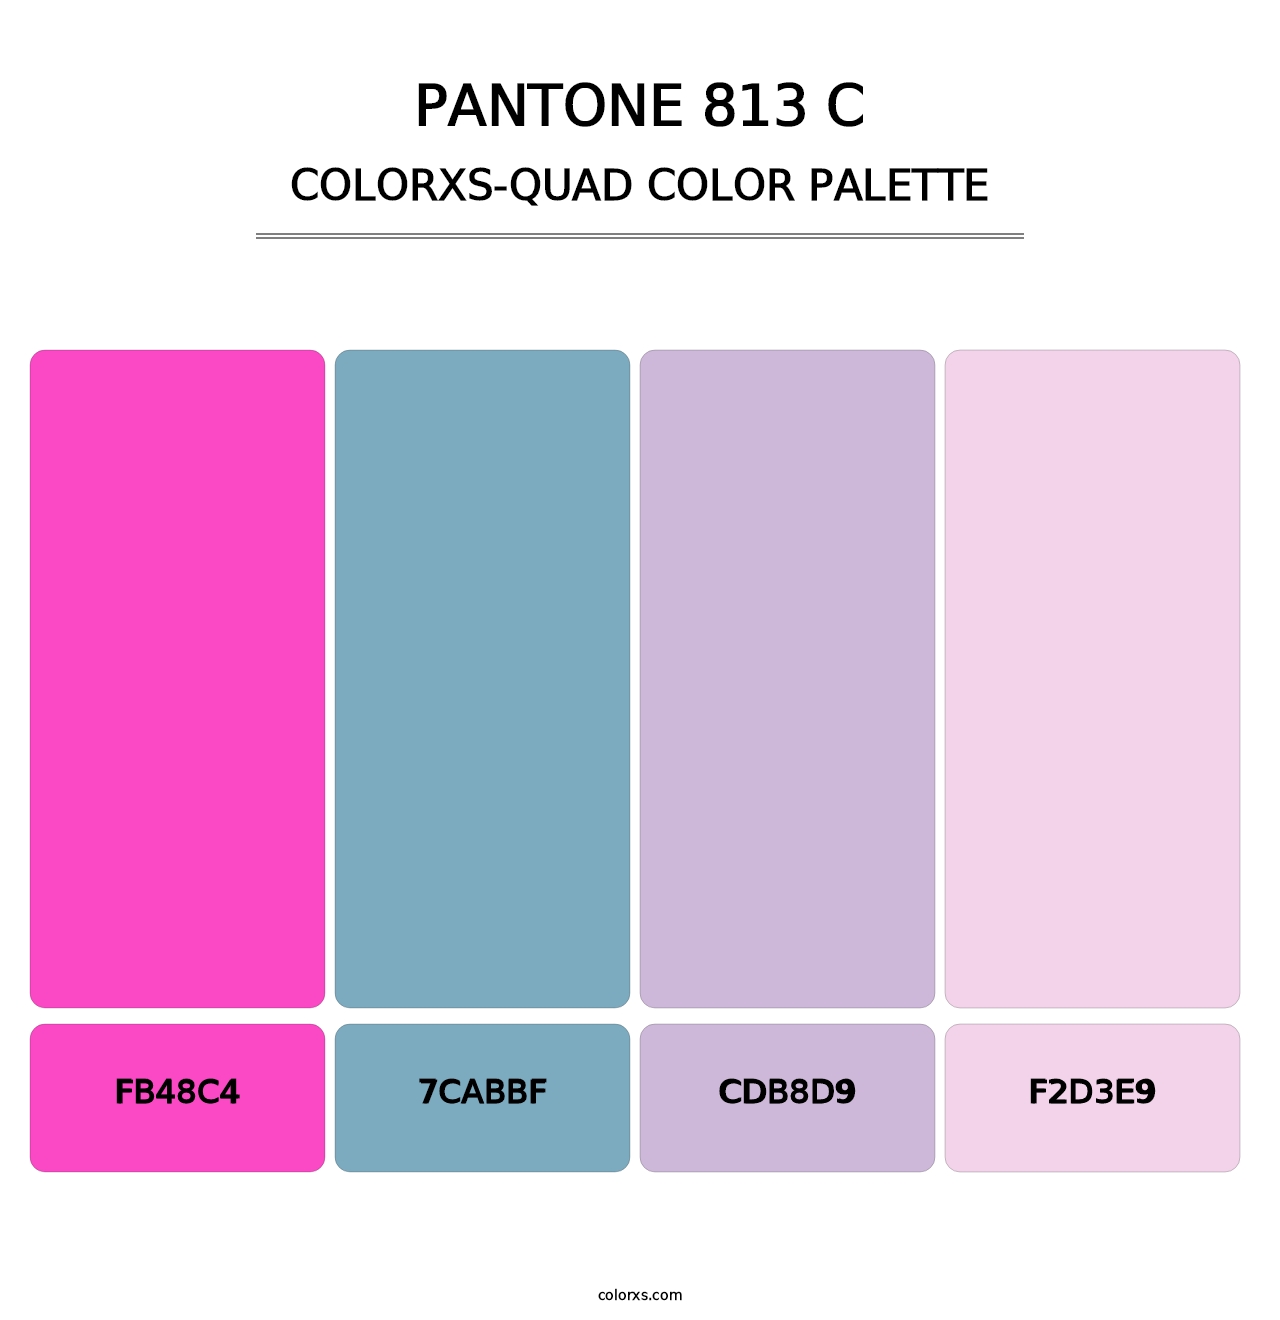 PANTONE 813 C - Colorxs Quad Palette